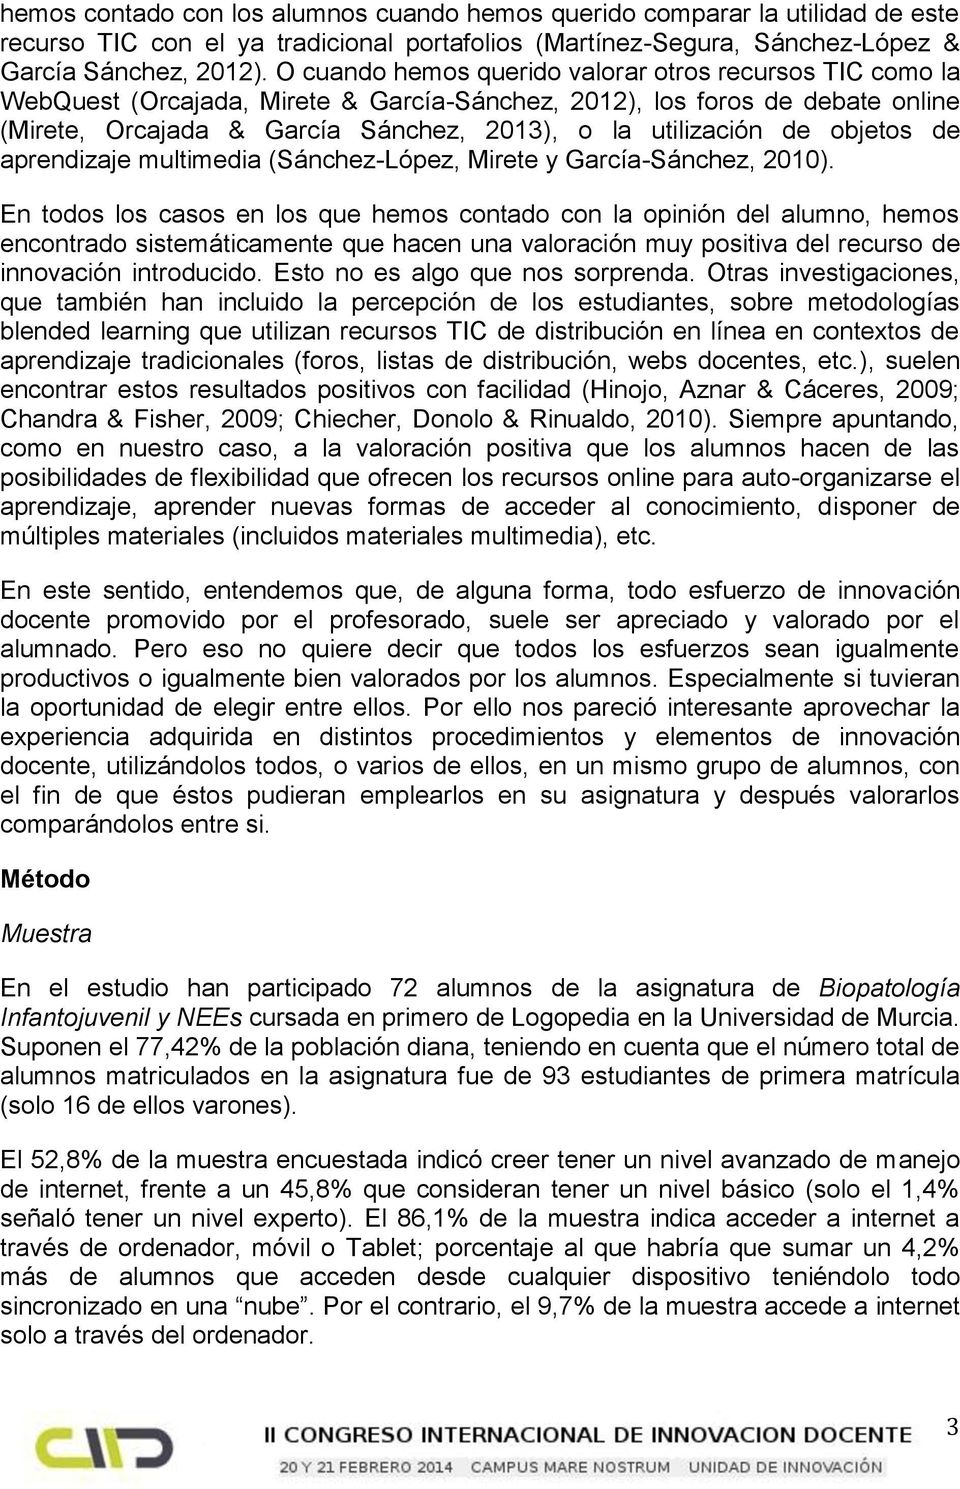 objetos de aprendizaje multimedia (Sánchez-López, Mirete y García-Sánchez, 2010).